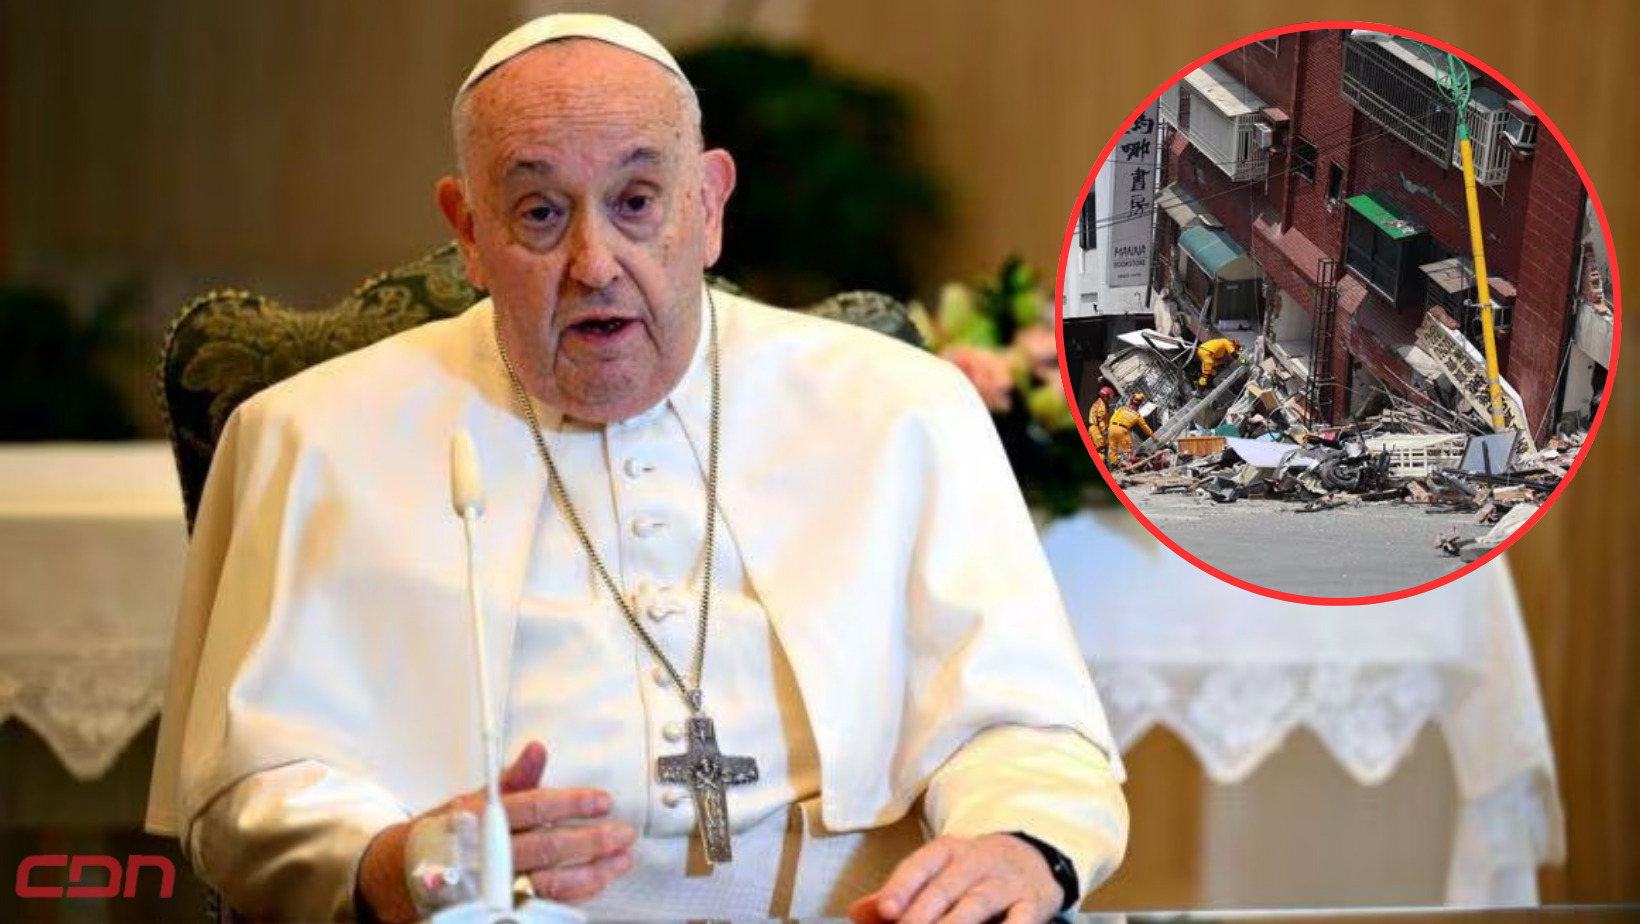 El papa Francisco expresa sus oraciones por las víctimas del terremoto de Taiwán. Foto: CDN Digital